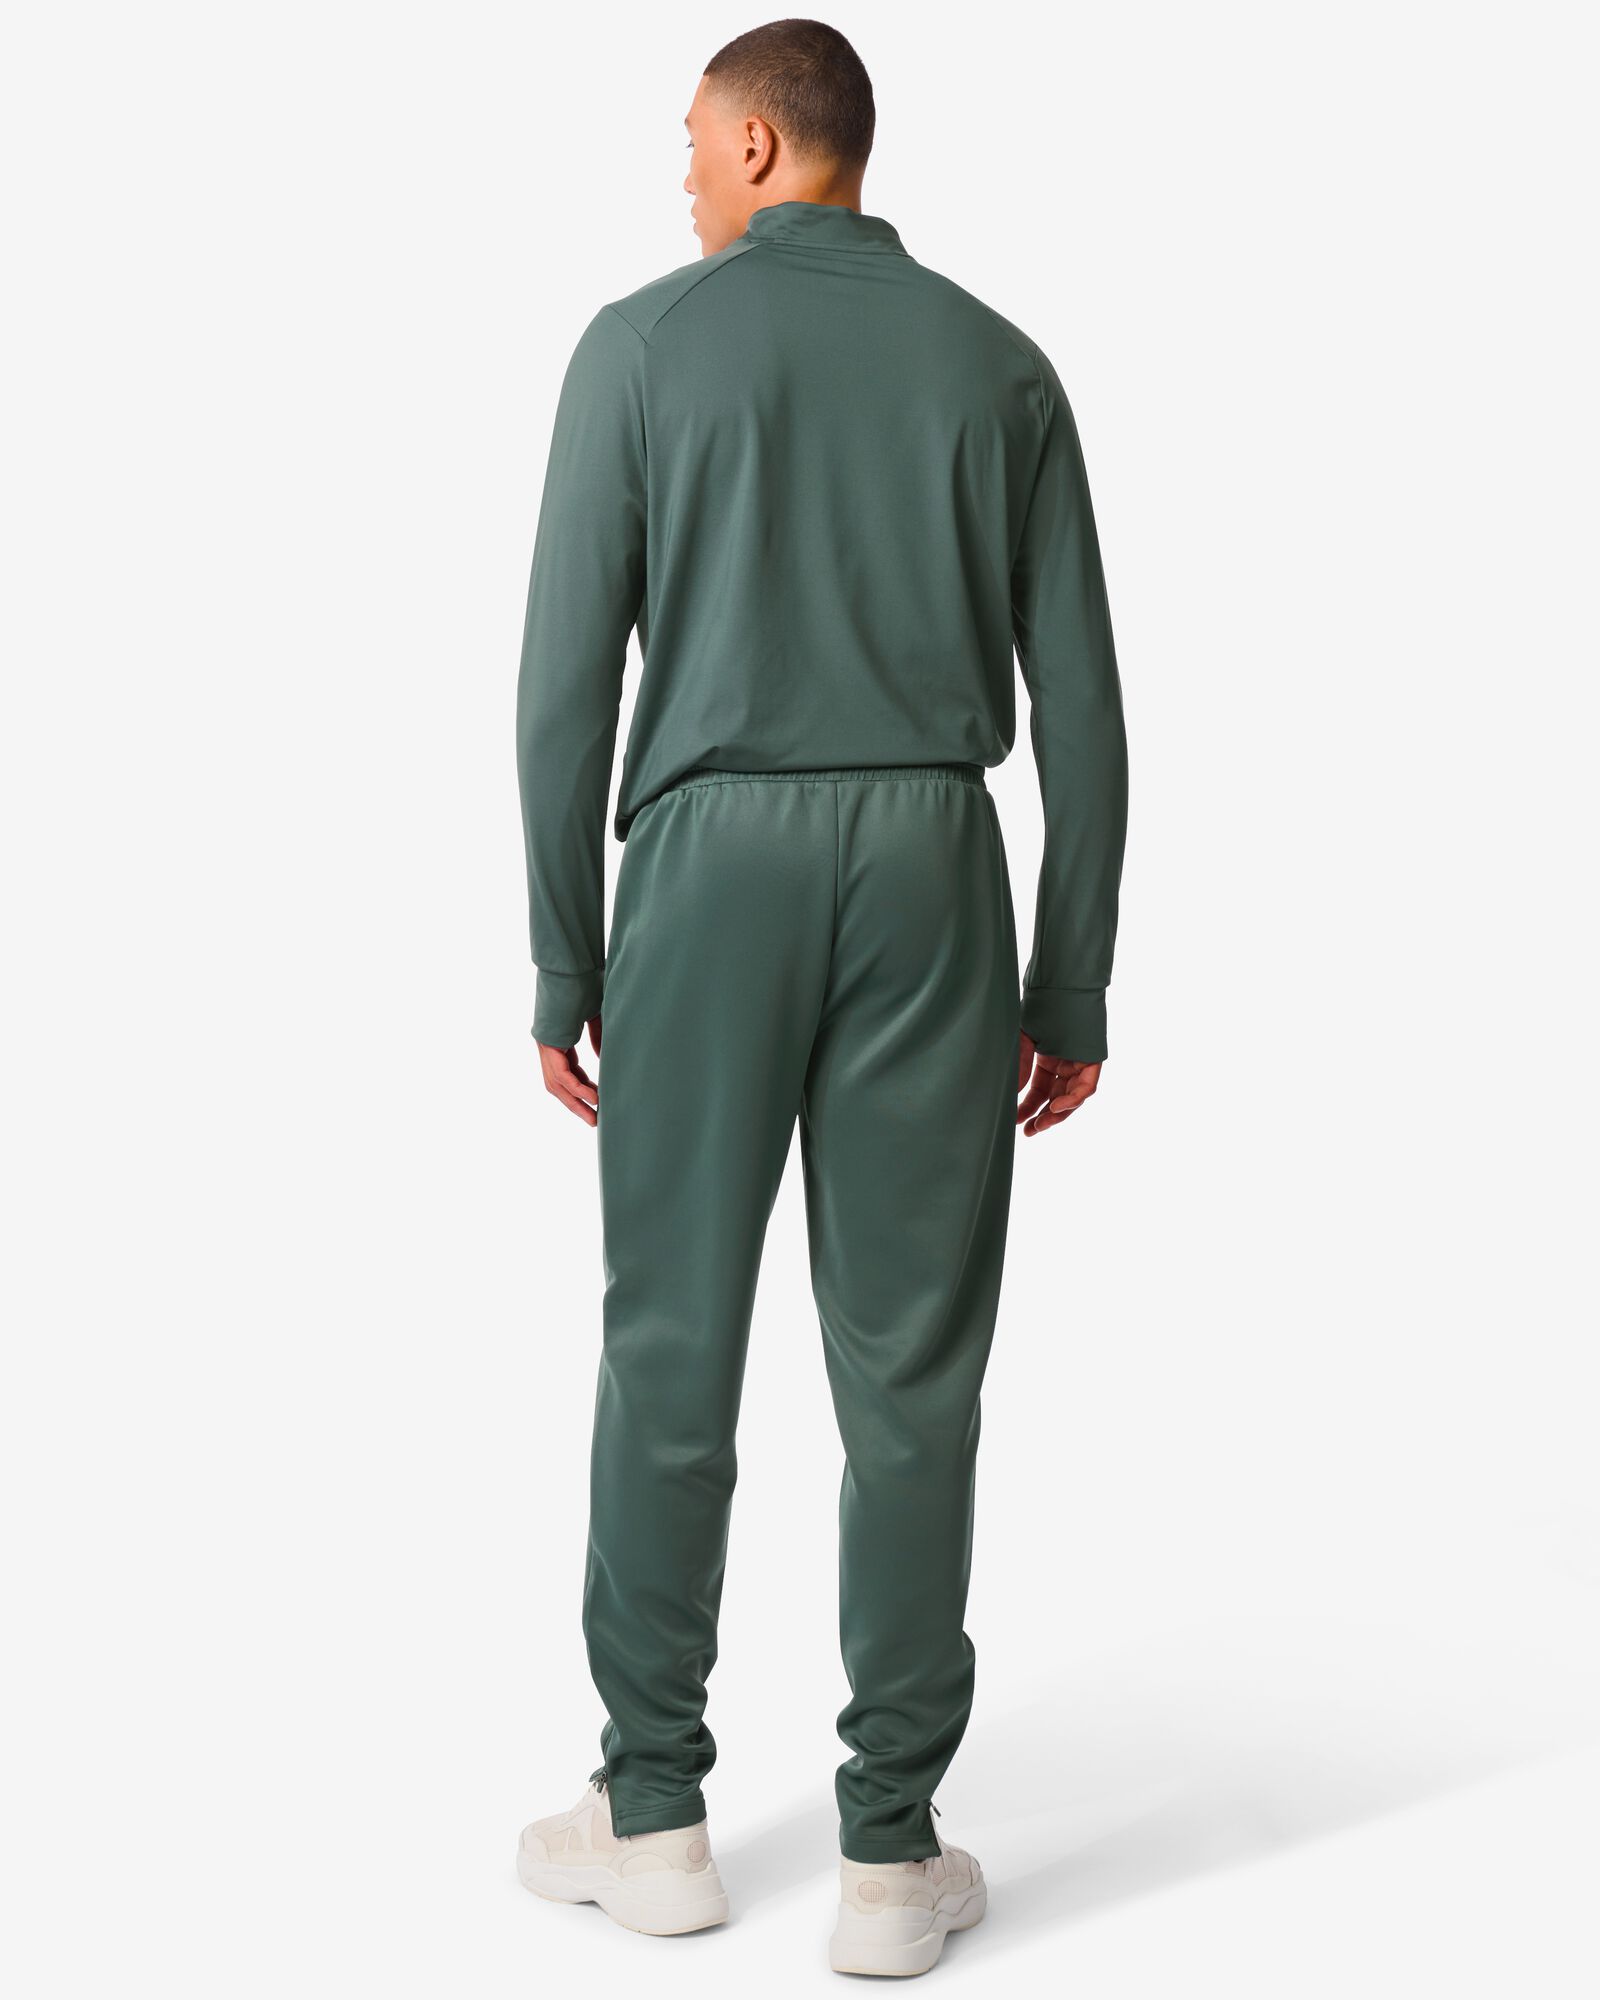 pantalon d’entraînement homme vert vert - 36090218GREEN - HEMA